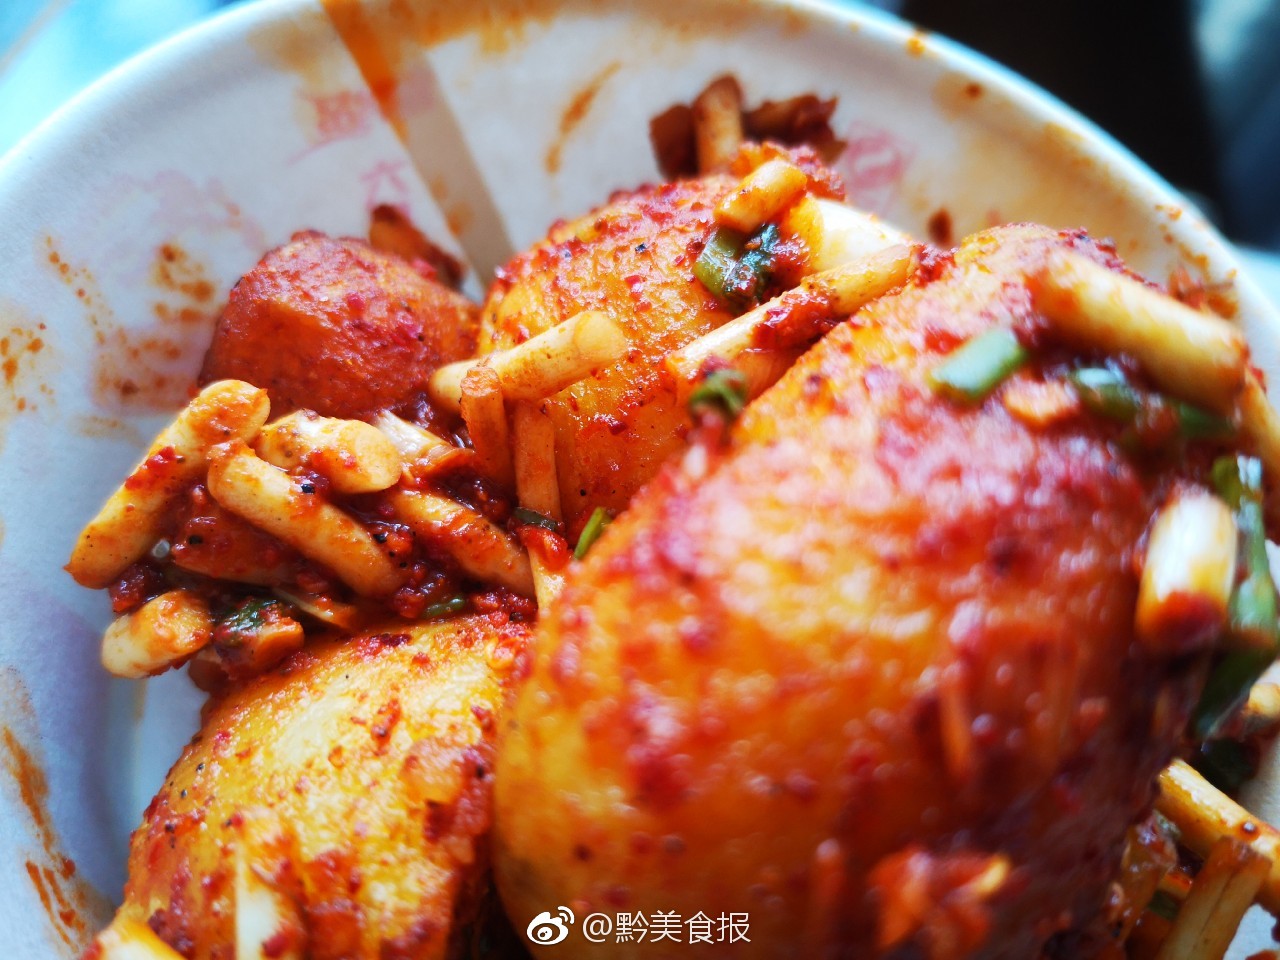 渣海椒配洋芋饭，在重庆熙街遇见家乡味道，满满的农家特色 - 知乎